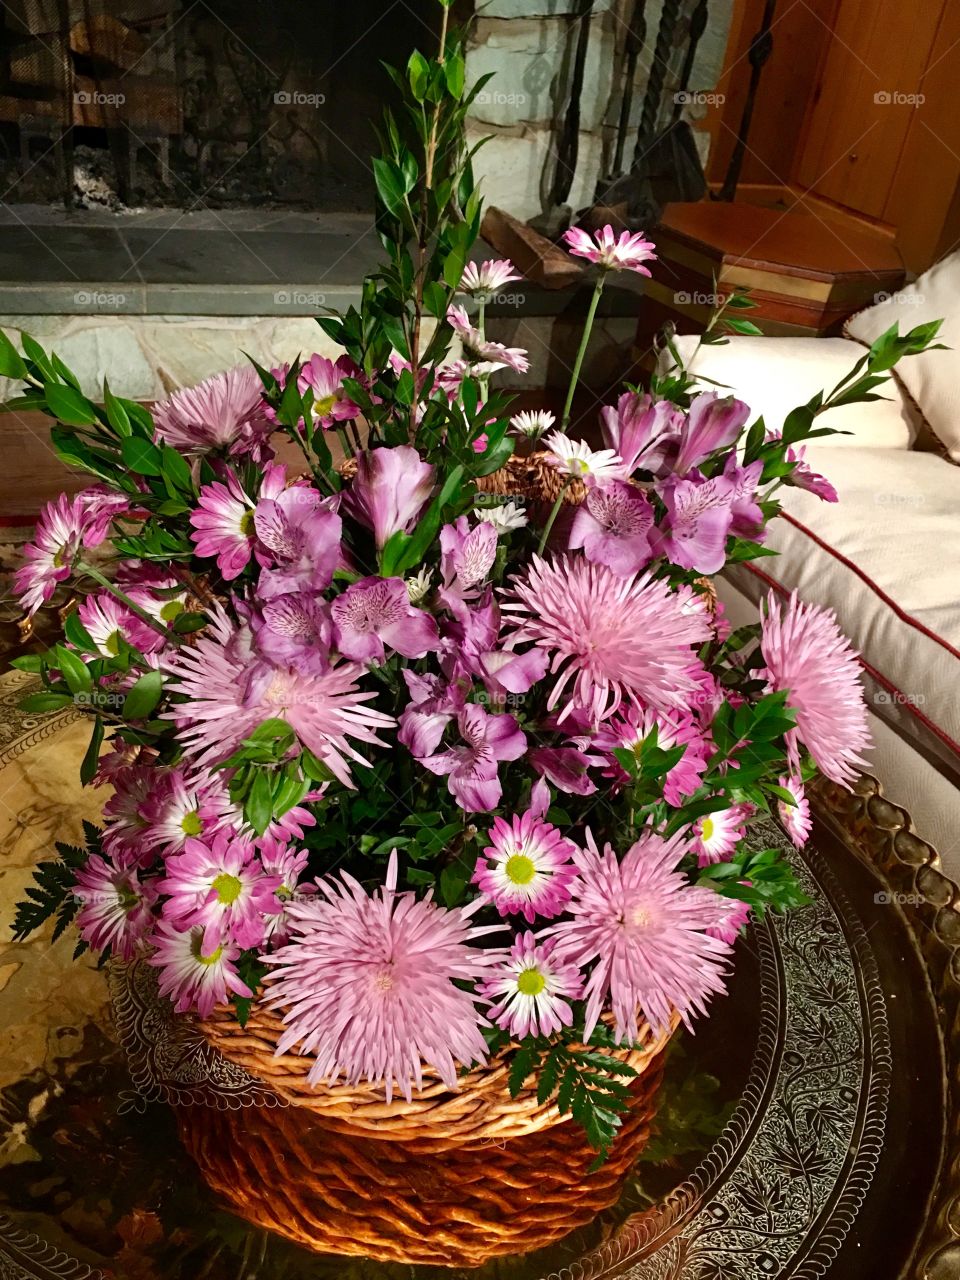 Beautiful Basket Bouquet in Pinks